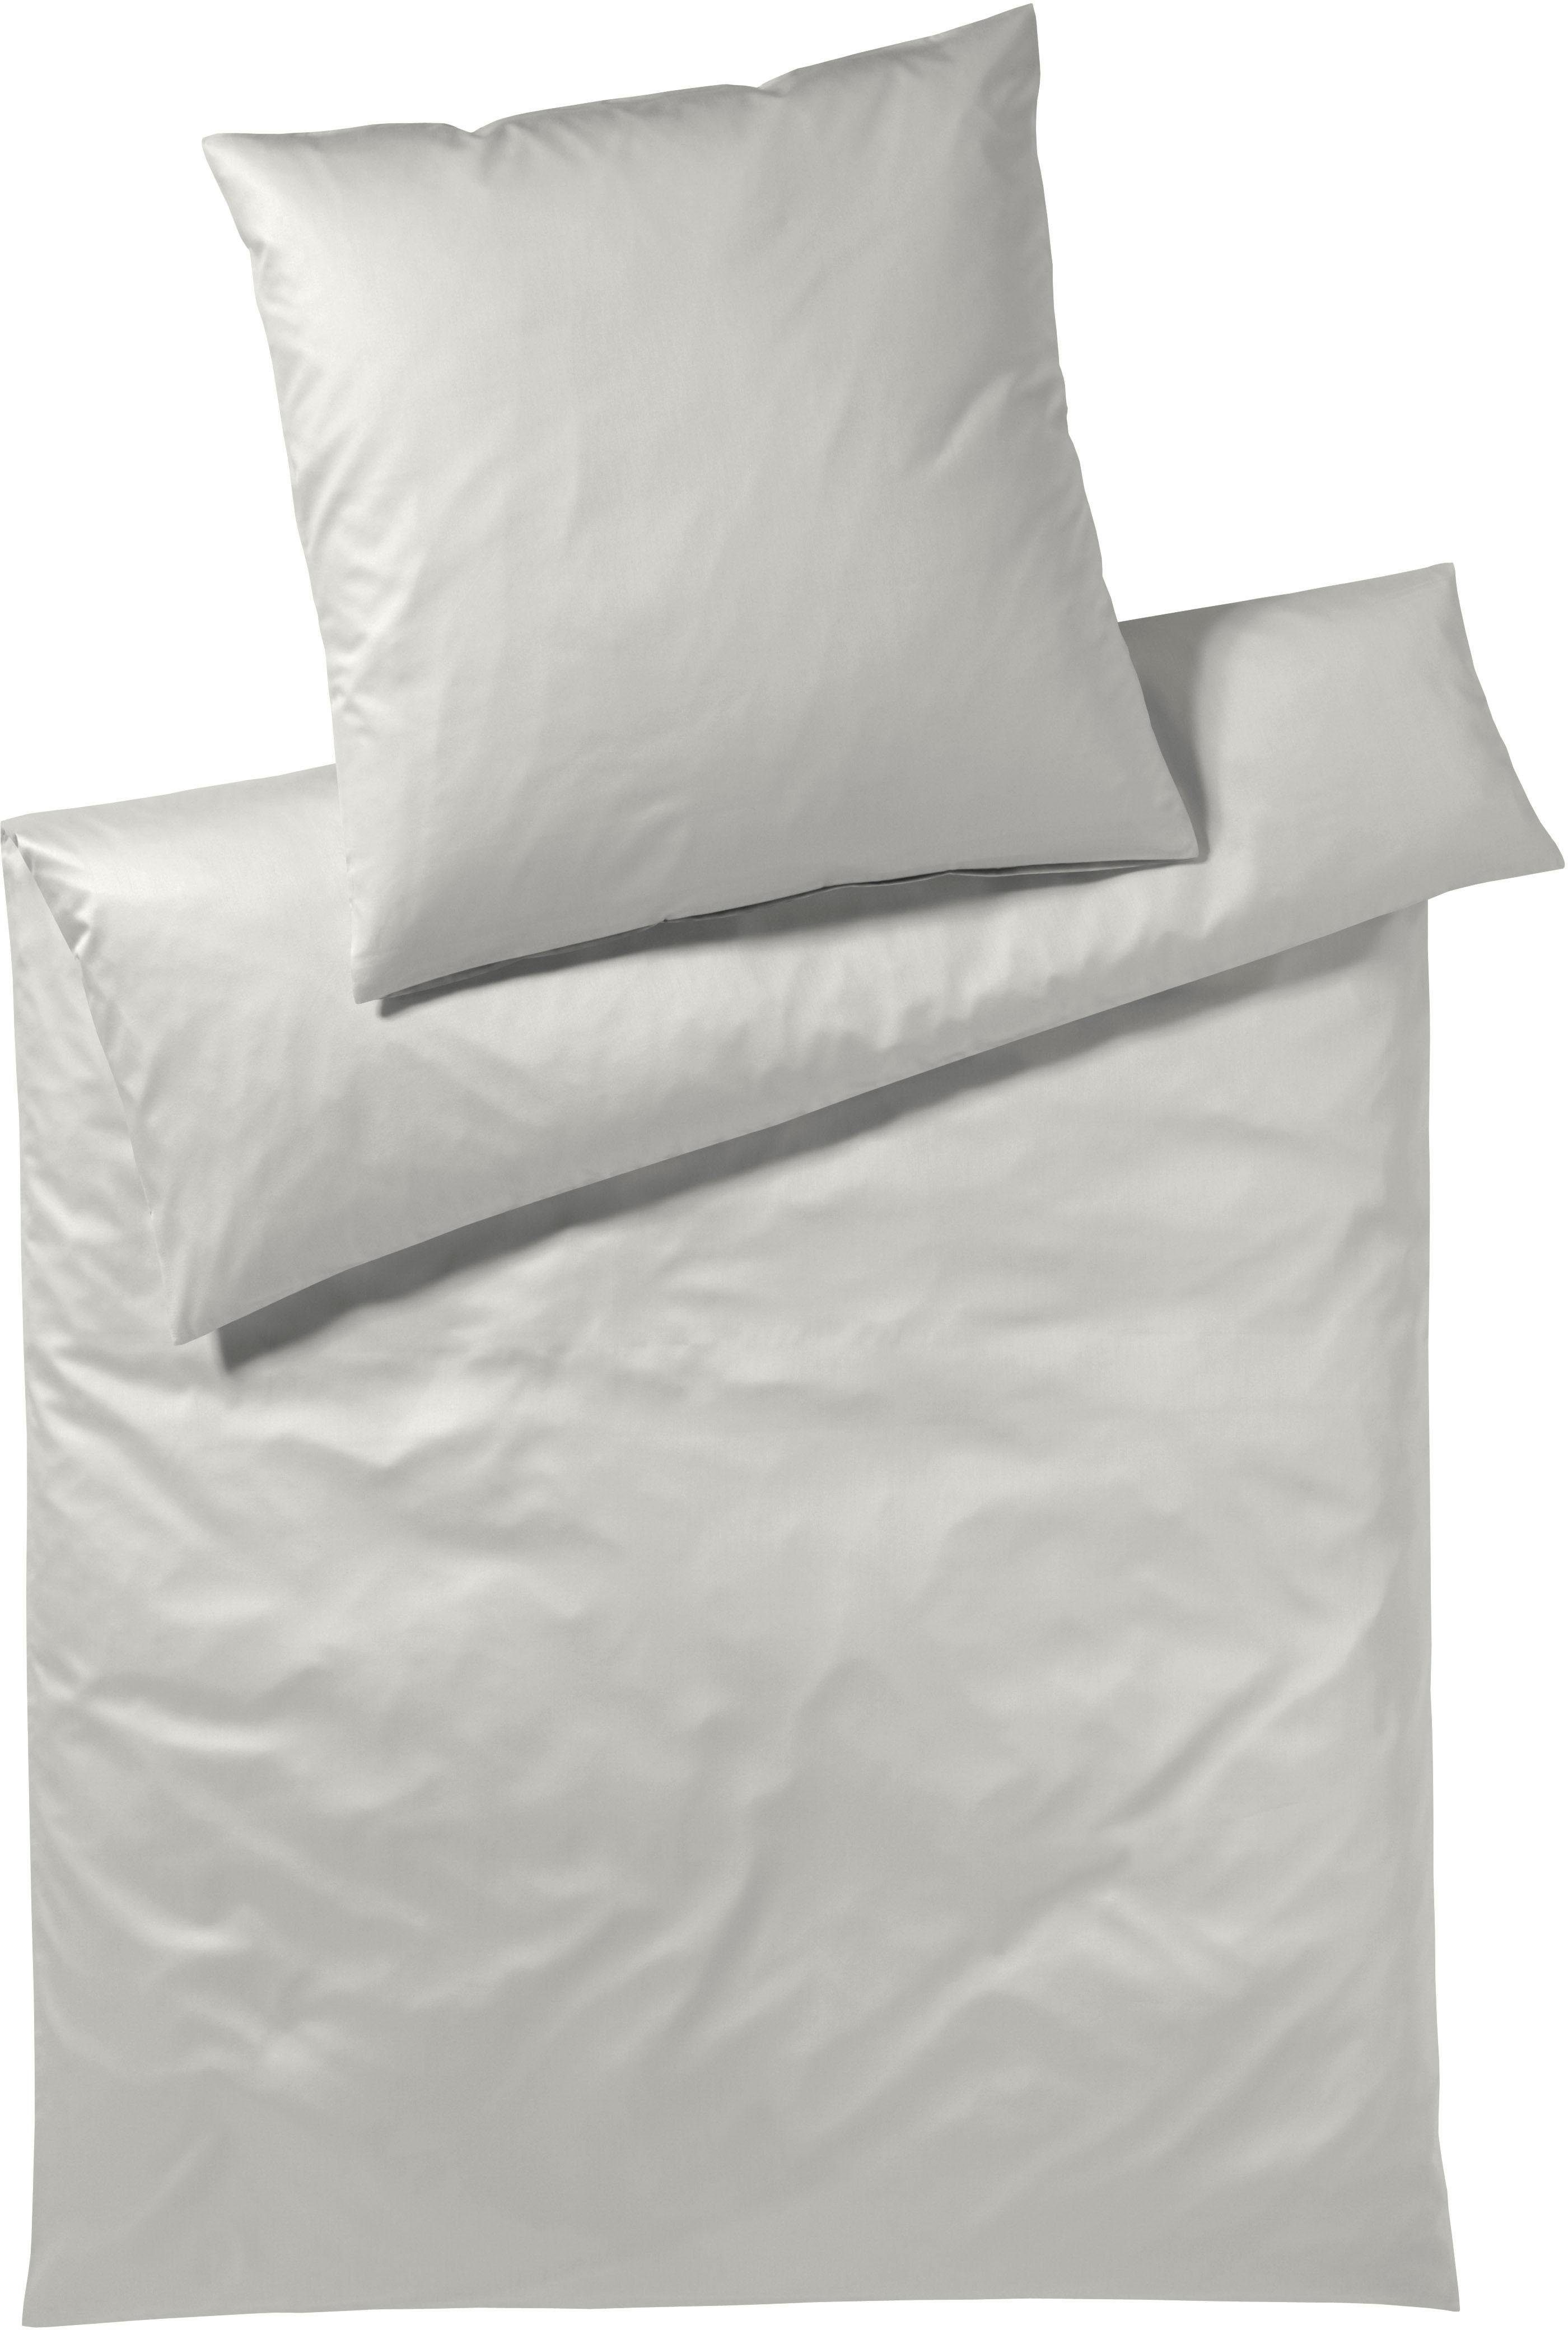 Bettwäsche Solid in Gr. 135x200 oder 155x220 cm, Elegante, Mako-Satin, 2 teilig, Bettwäsche aus Baumwolle, elegante Bettwäsche mit Reißverschluss